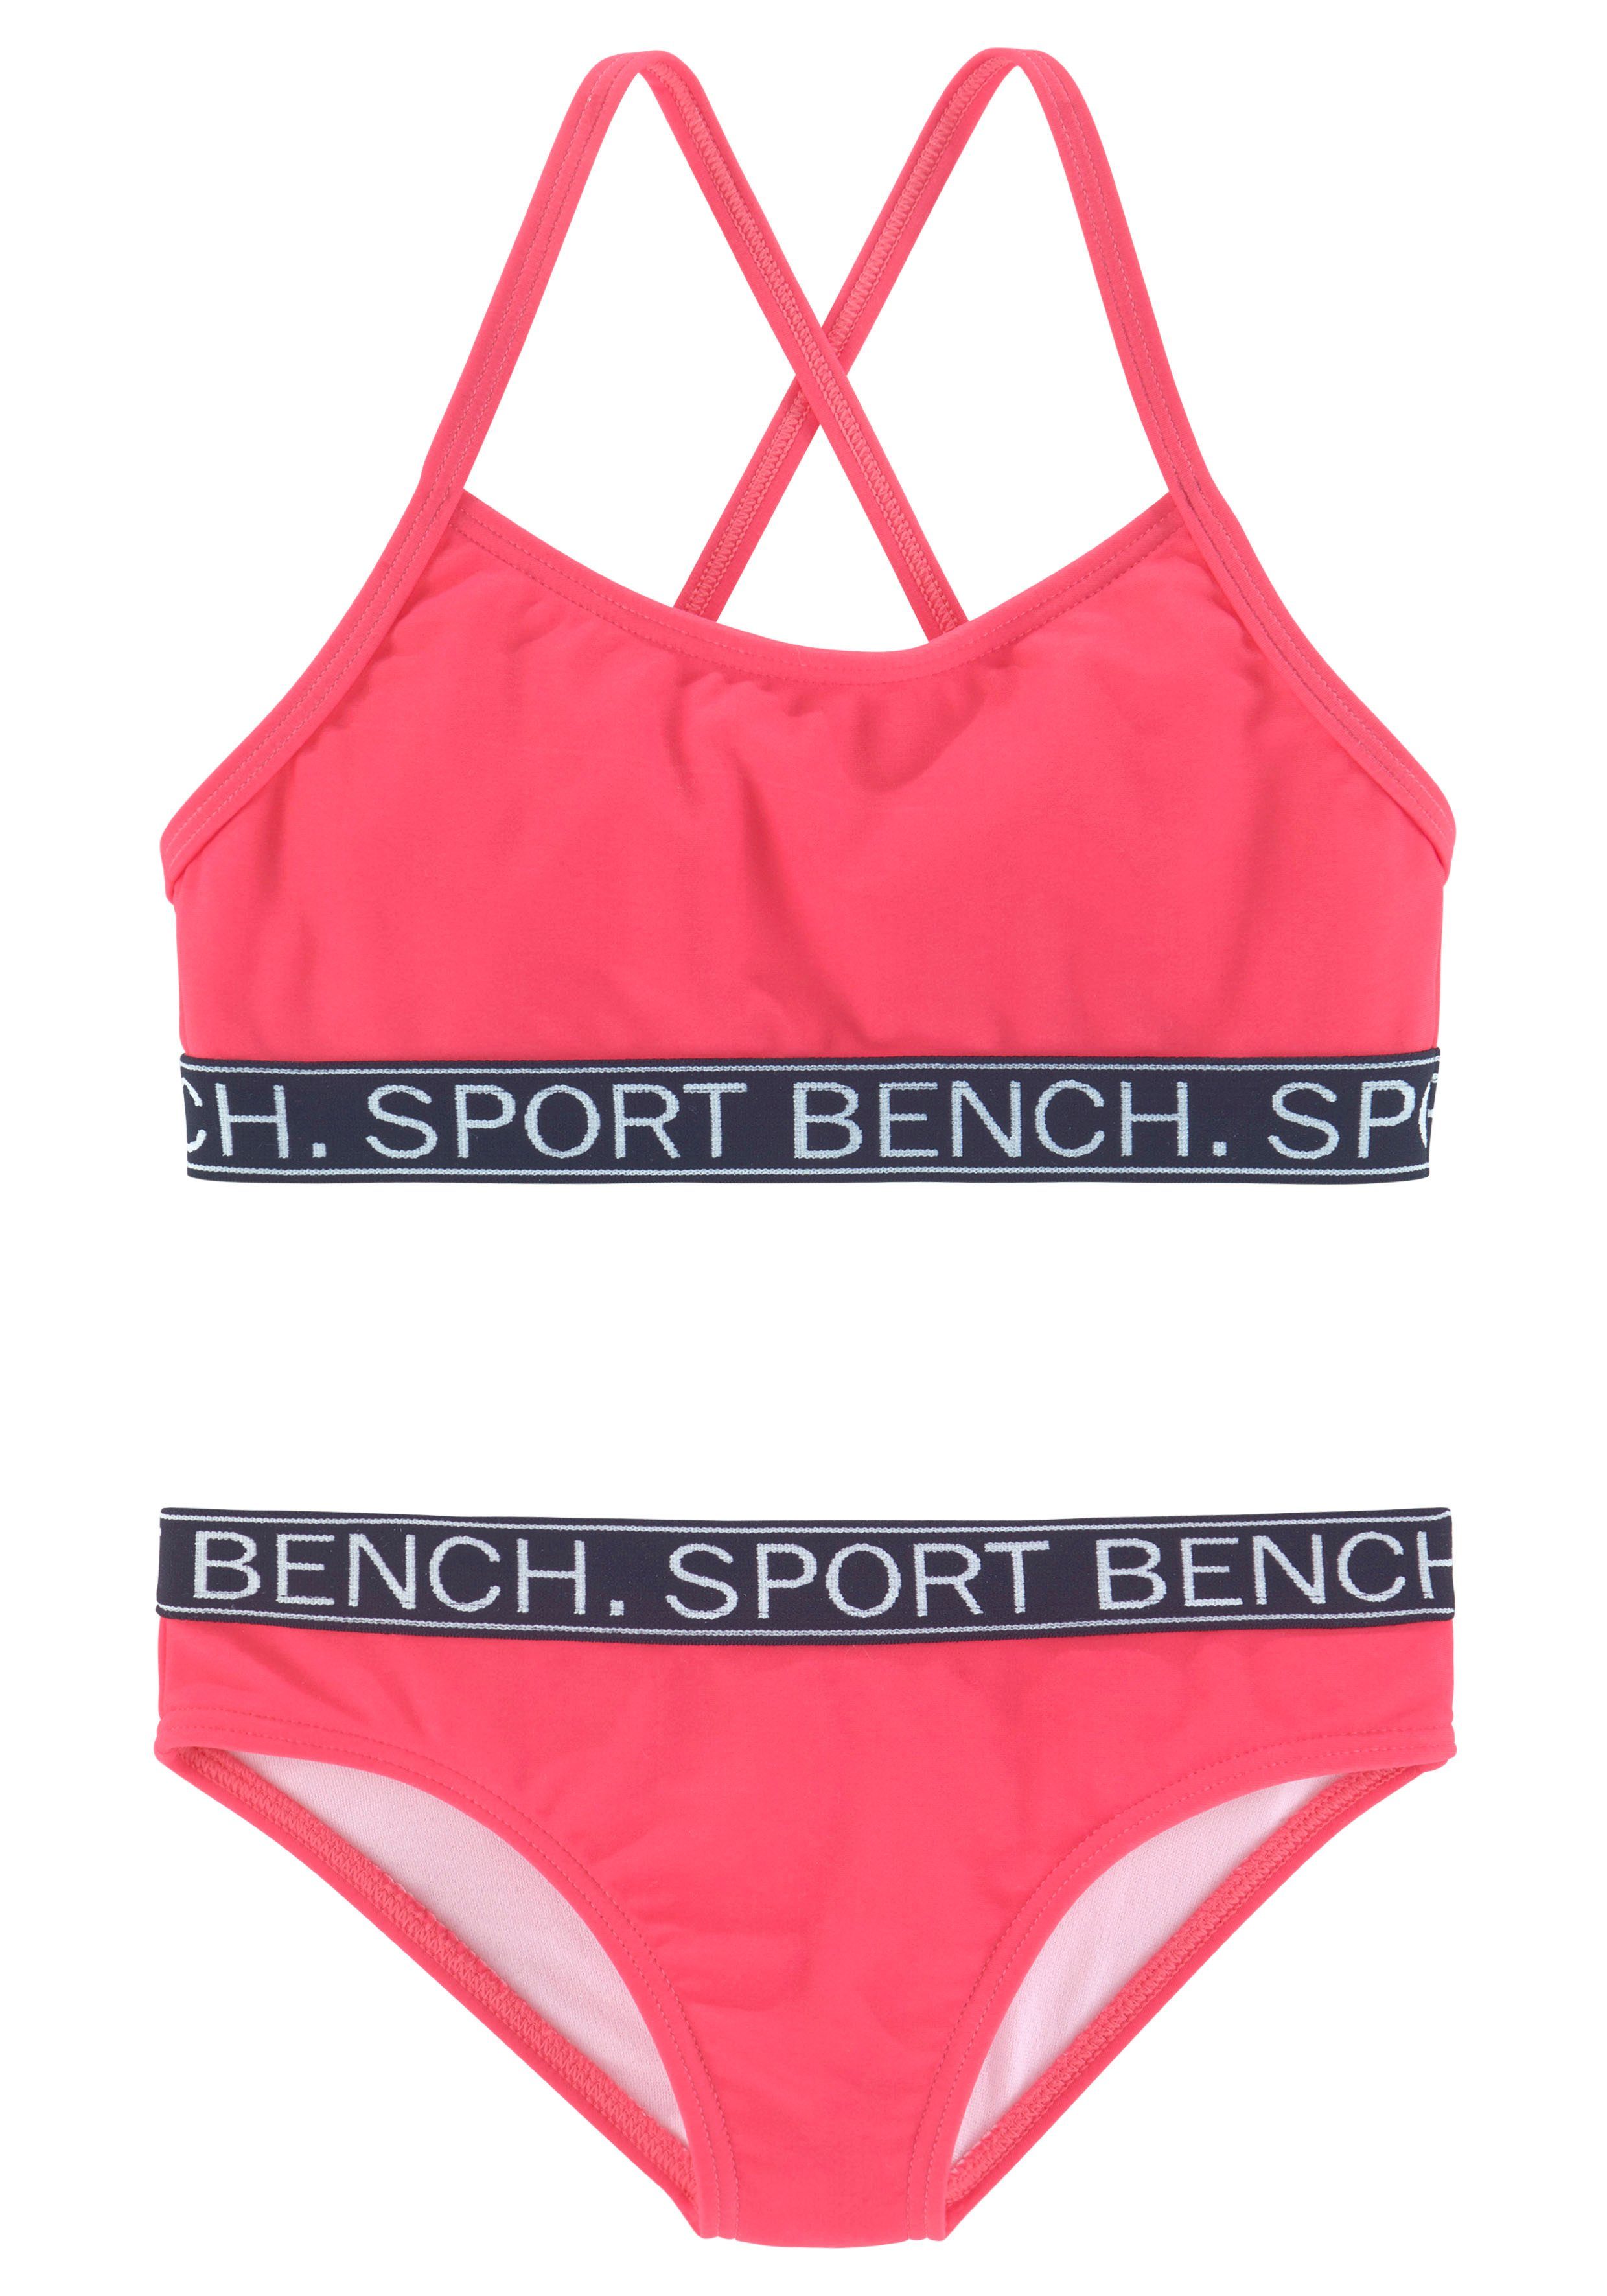 Bench. Bustier-Bikini Yva Kids pink in Design und Farben sportlichem